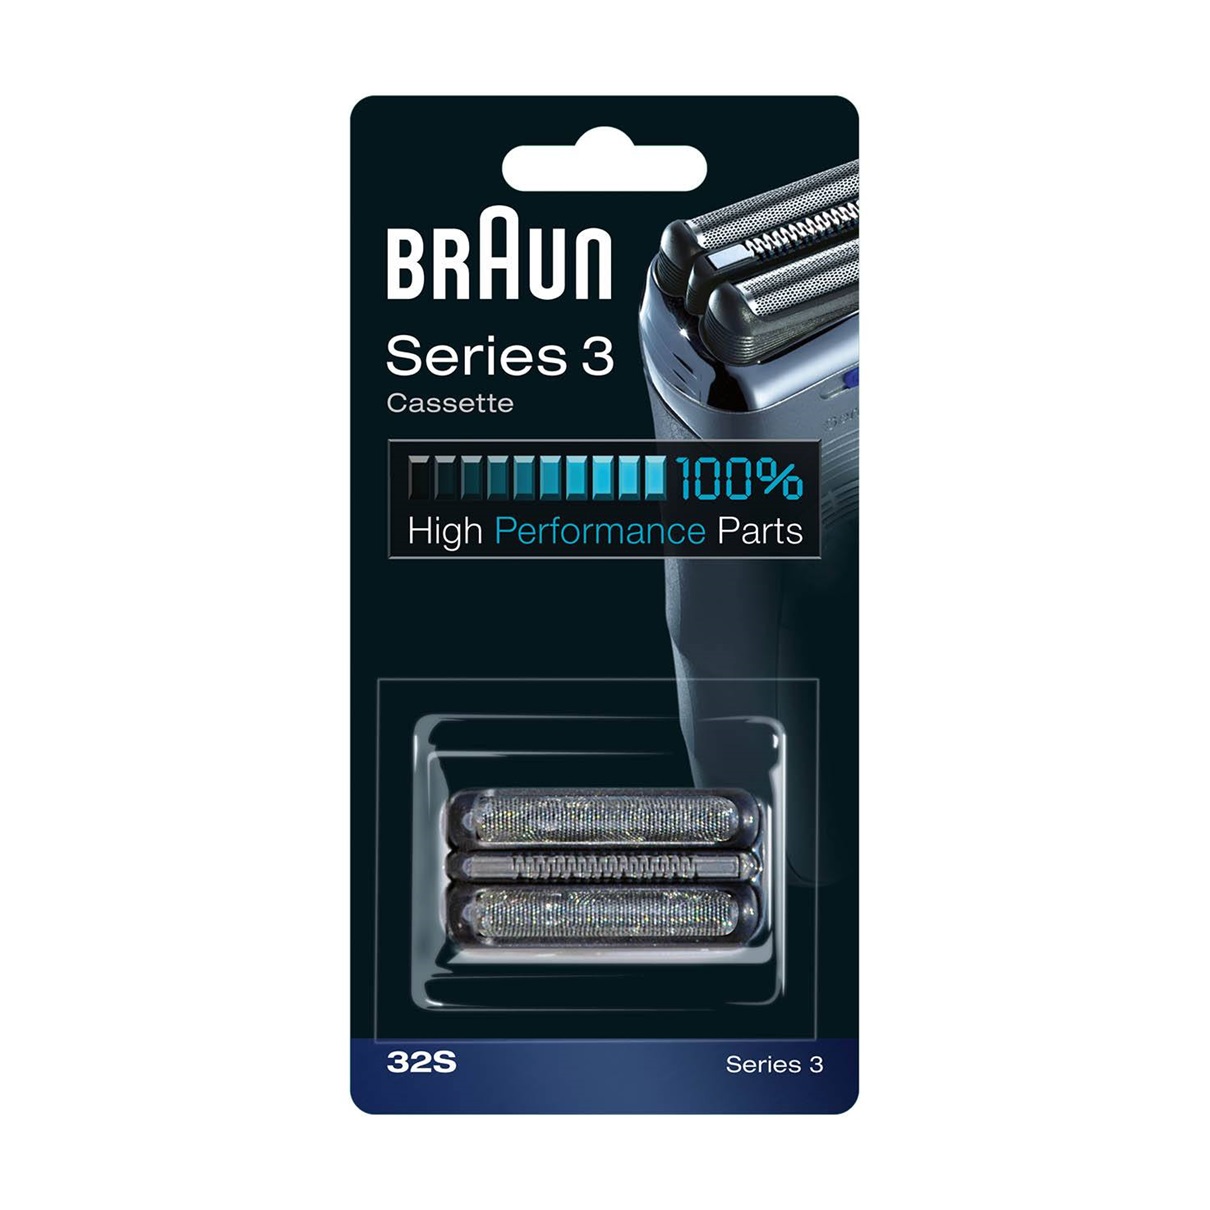 Сетка и режущий блок для бритв Braun 32S 10x628 бритвы замена лезвия бритвы фольга для зубных щеток braun серии 3000 3310 3315 3600 3610 3612 3614 3732 5629 3774 5632 для бритья сетка с сеткой